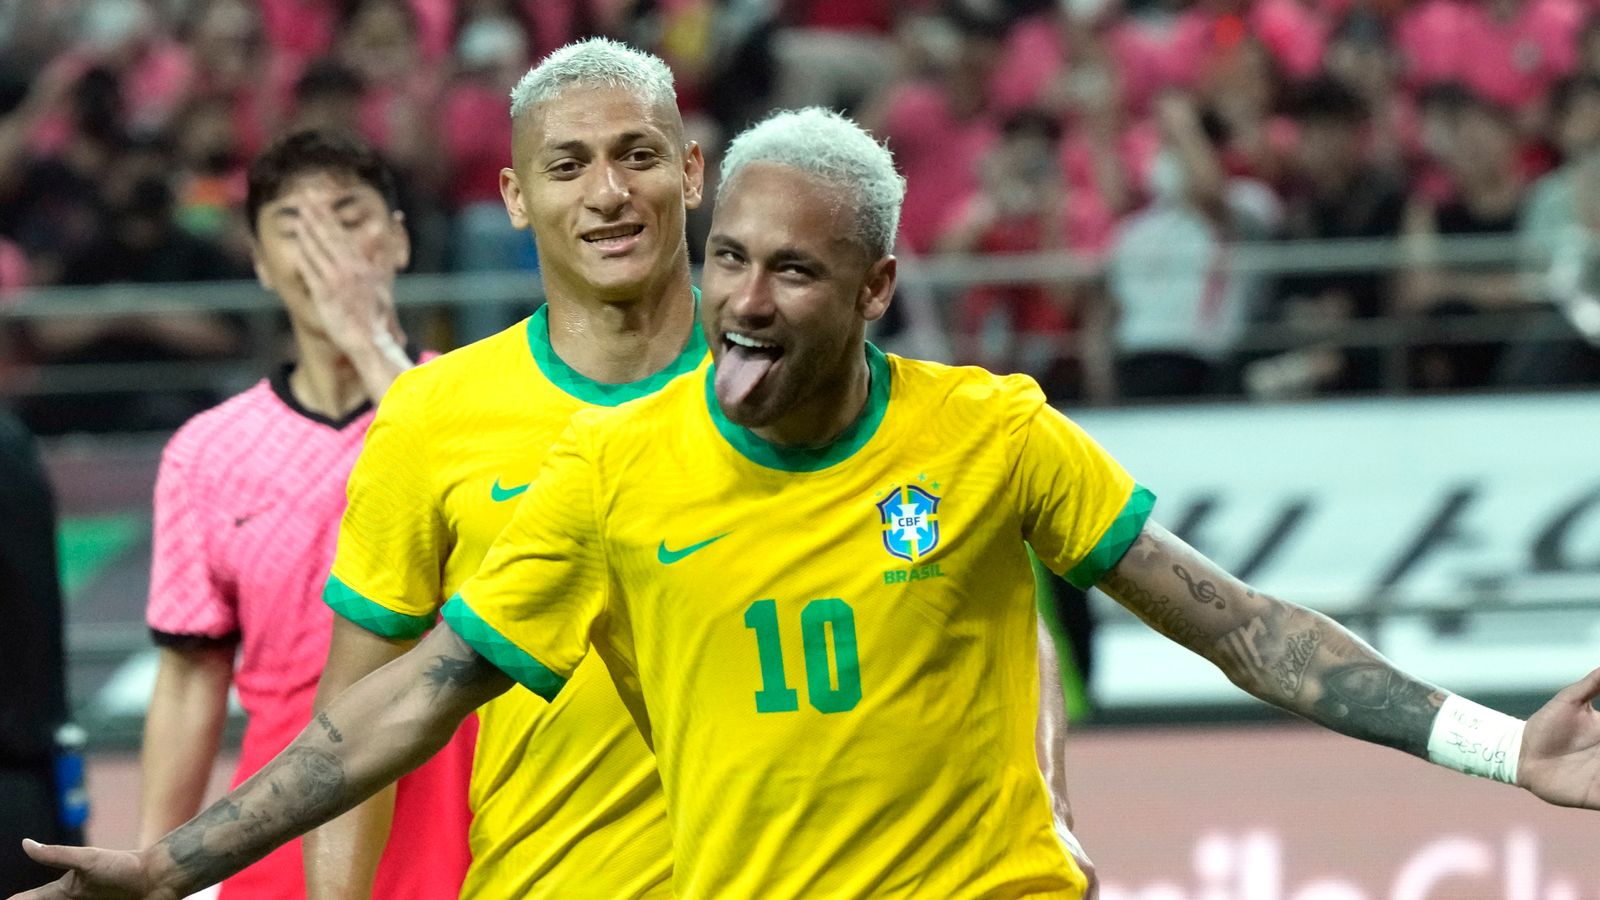 Rankingi Pucharu Świata: Brazylia prowadzi w tabeli, wyprzedzając Belgię, Argentynę, Francję i Anglię |  wiadomości piłkarskie